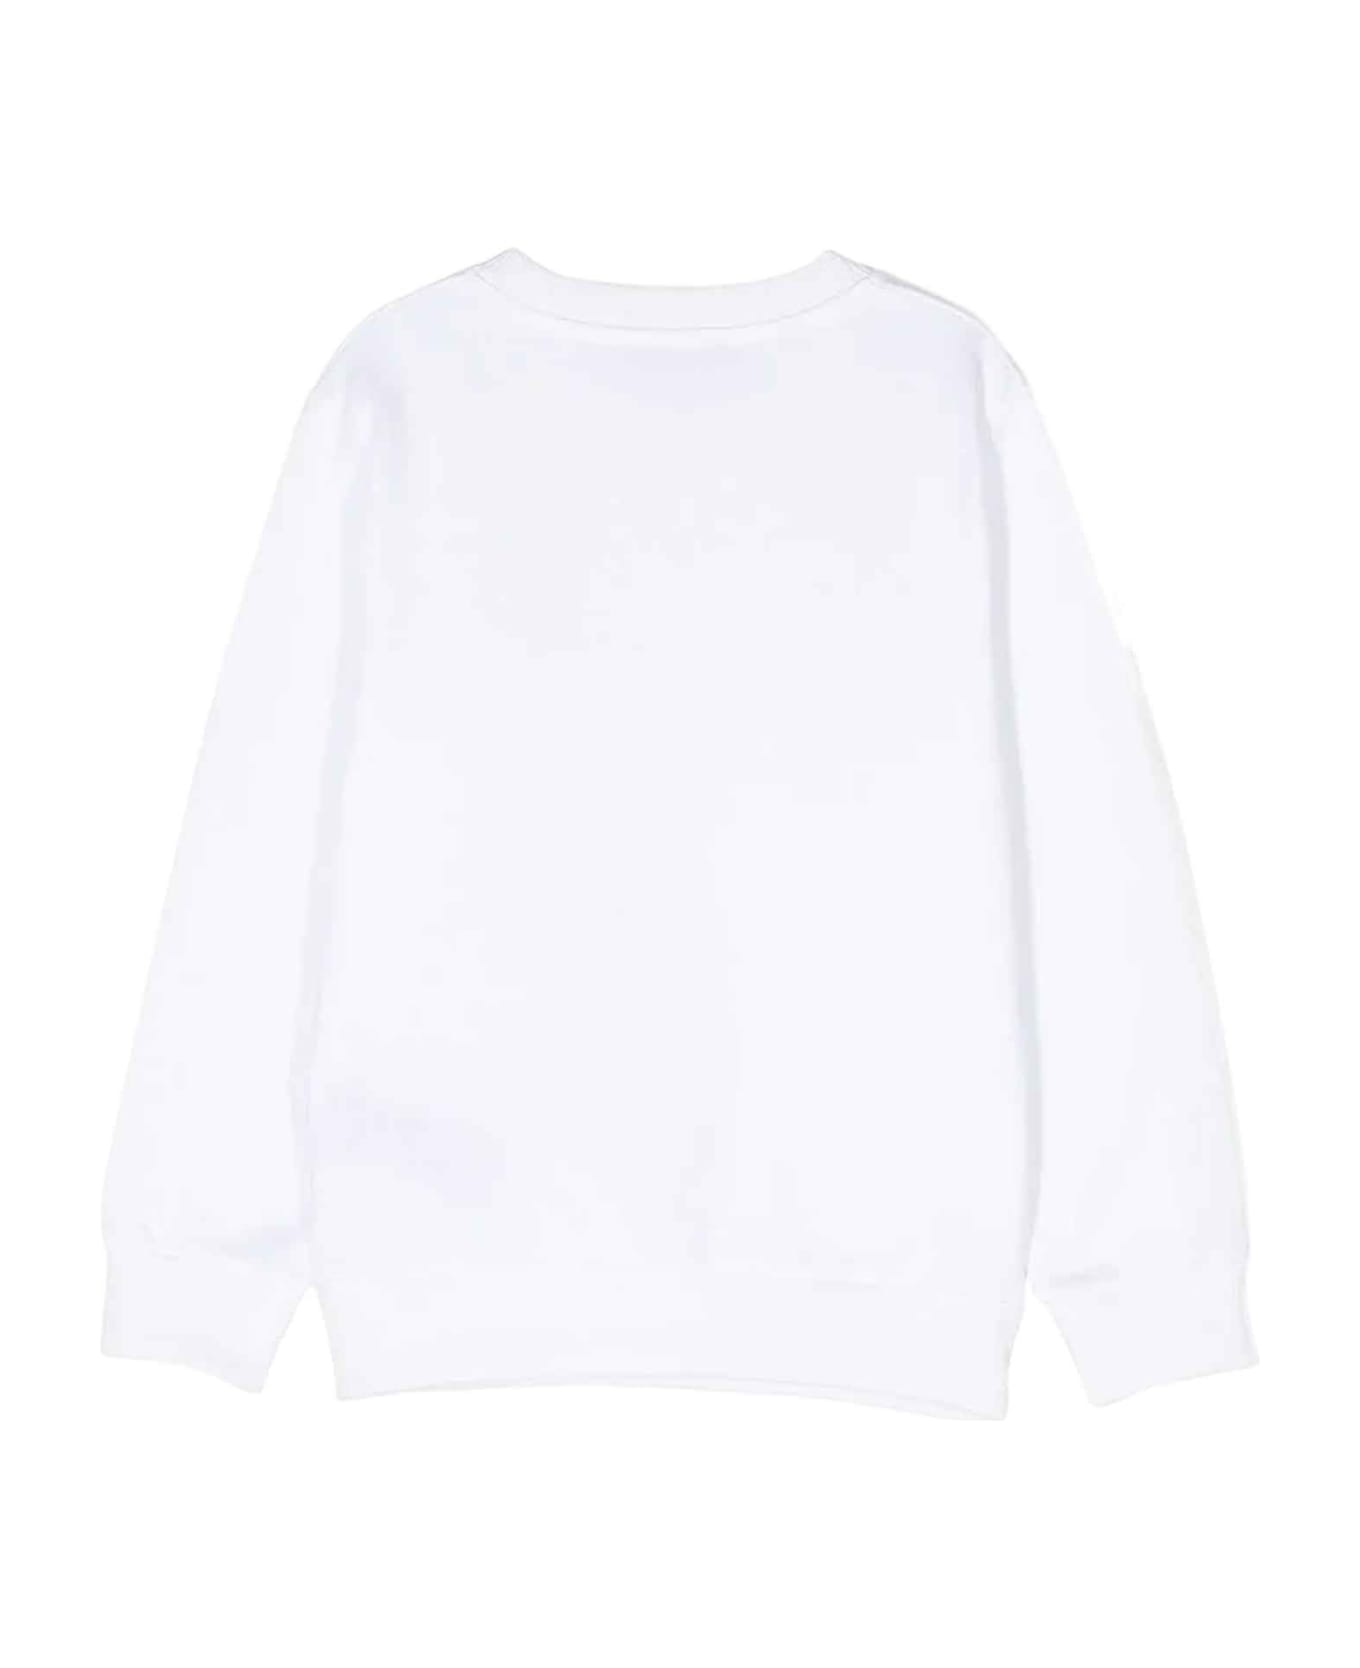 Balmain White Sweatshirt Unisex - Bianco/nero